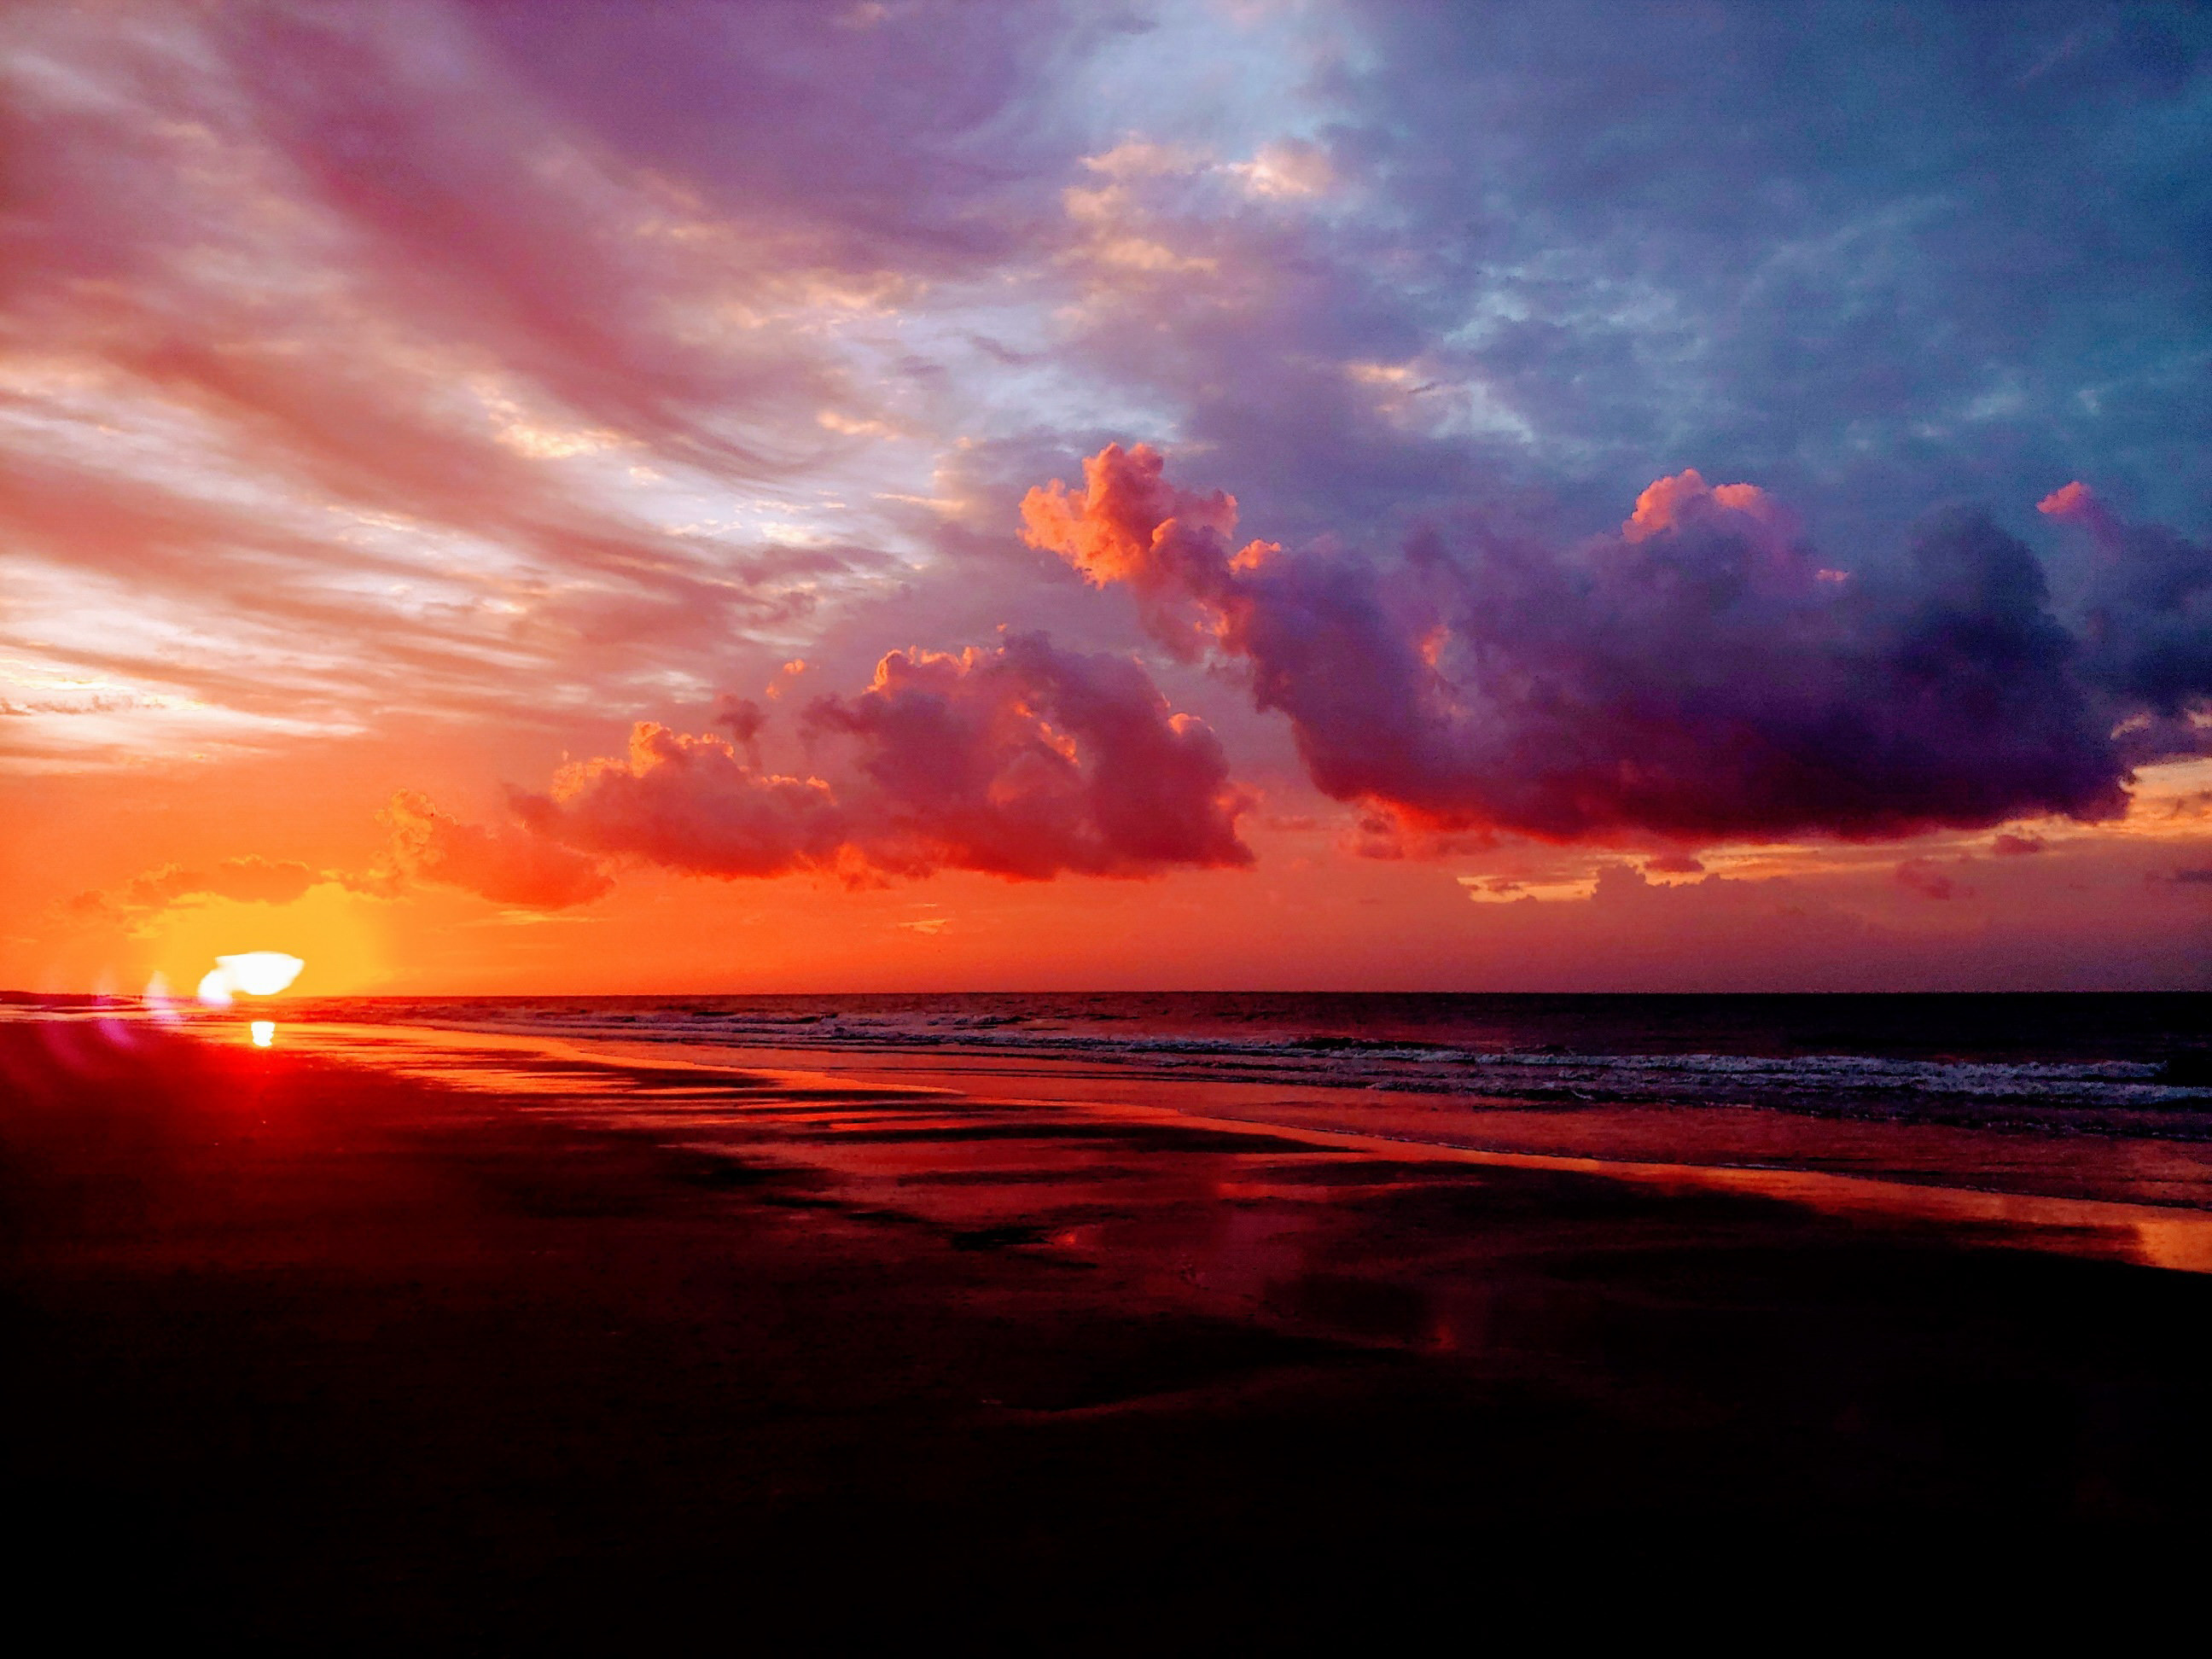 Sunrise over the ocean and a flat sandy beach